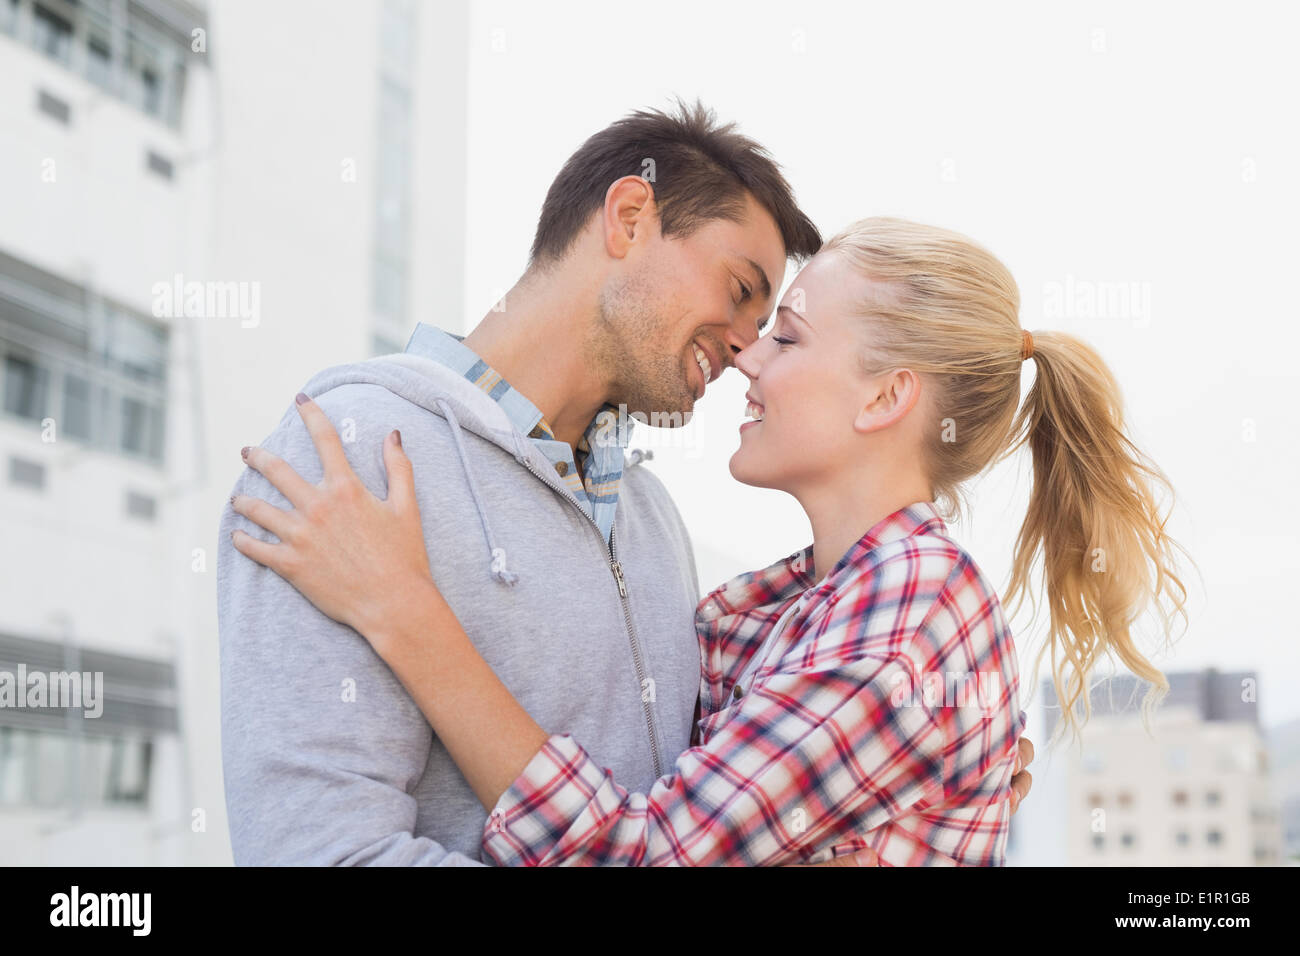 Hip young couple hugging à propos d'embrasser Banque D'Images